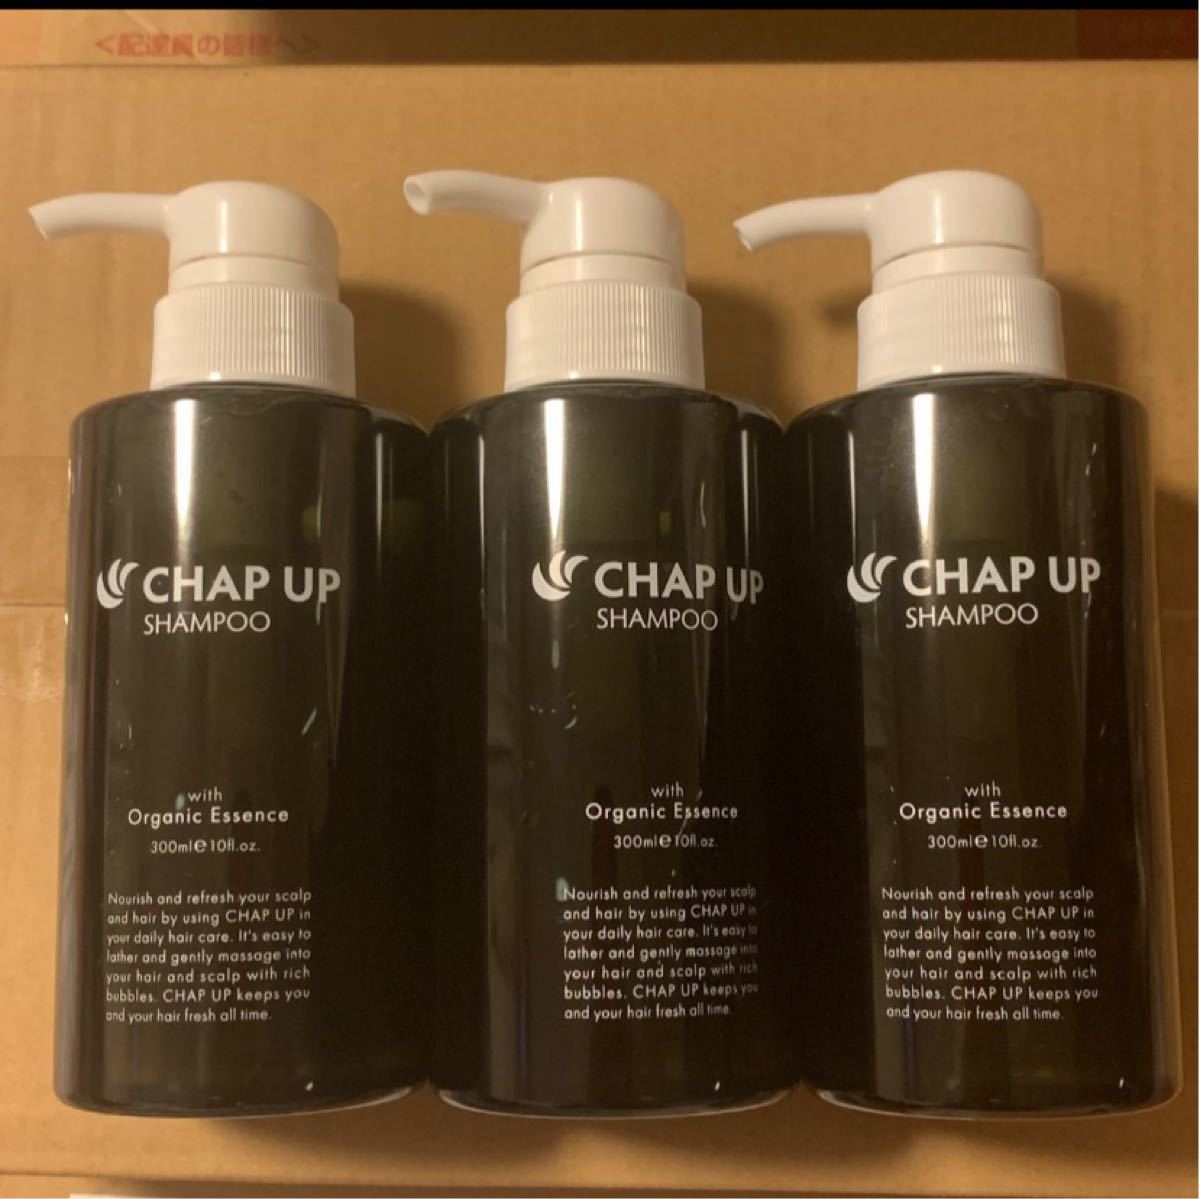 CHAP UP シャンプー 3本セット チャップアップ スカルプシャンプー チャップアップシャンプー